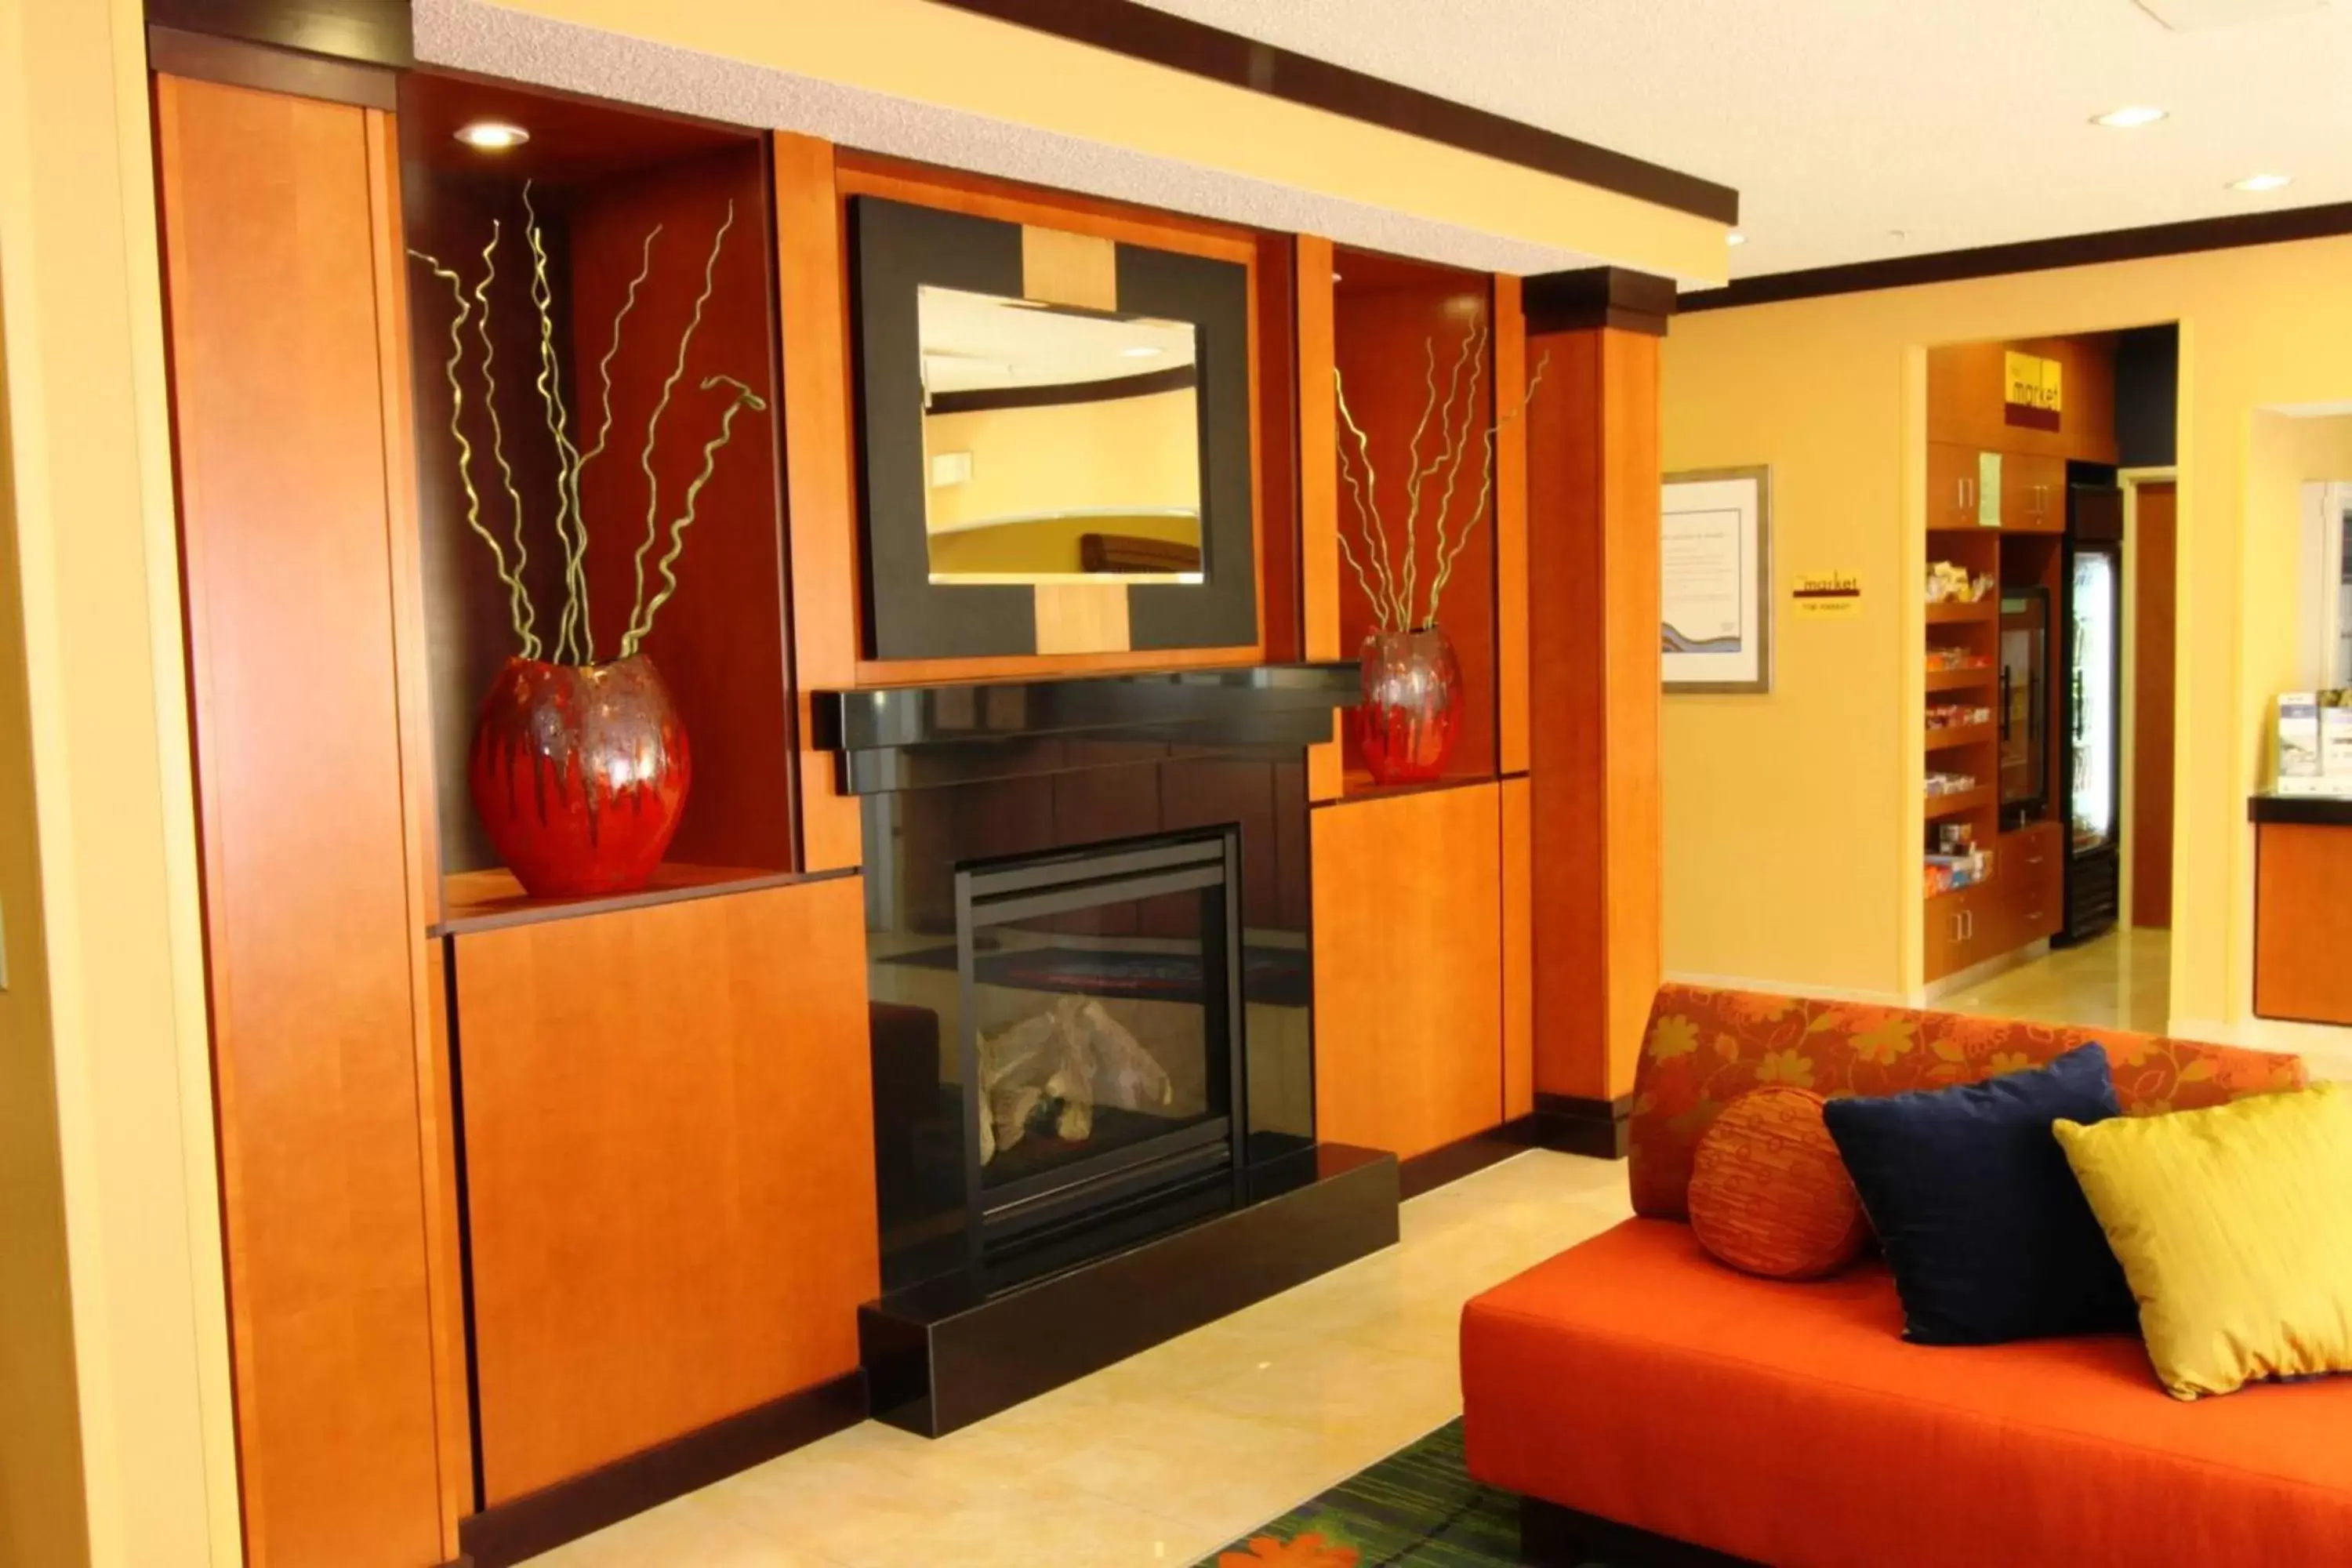 Lobby or reception in Fairfield Inn & Suites Minneapolis Burnsville